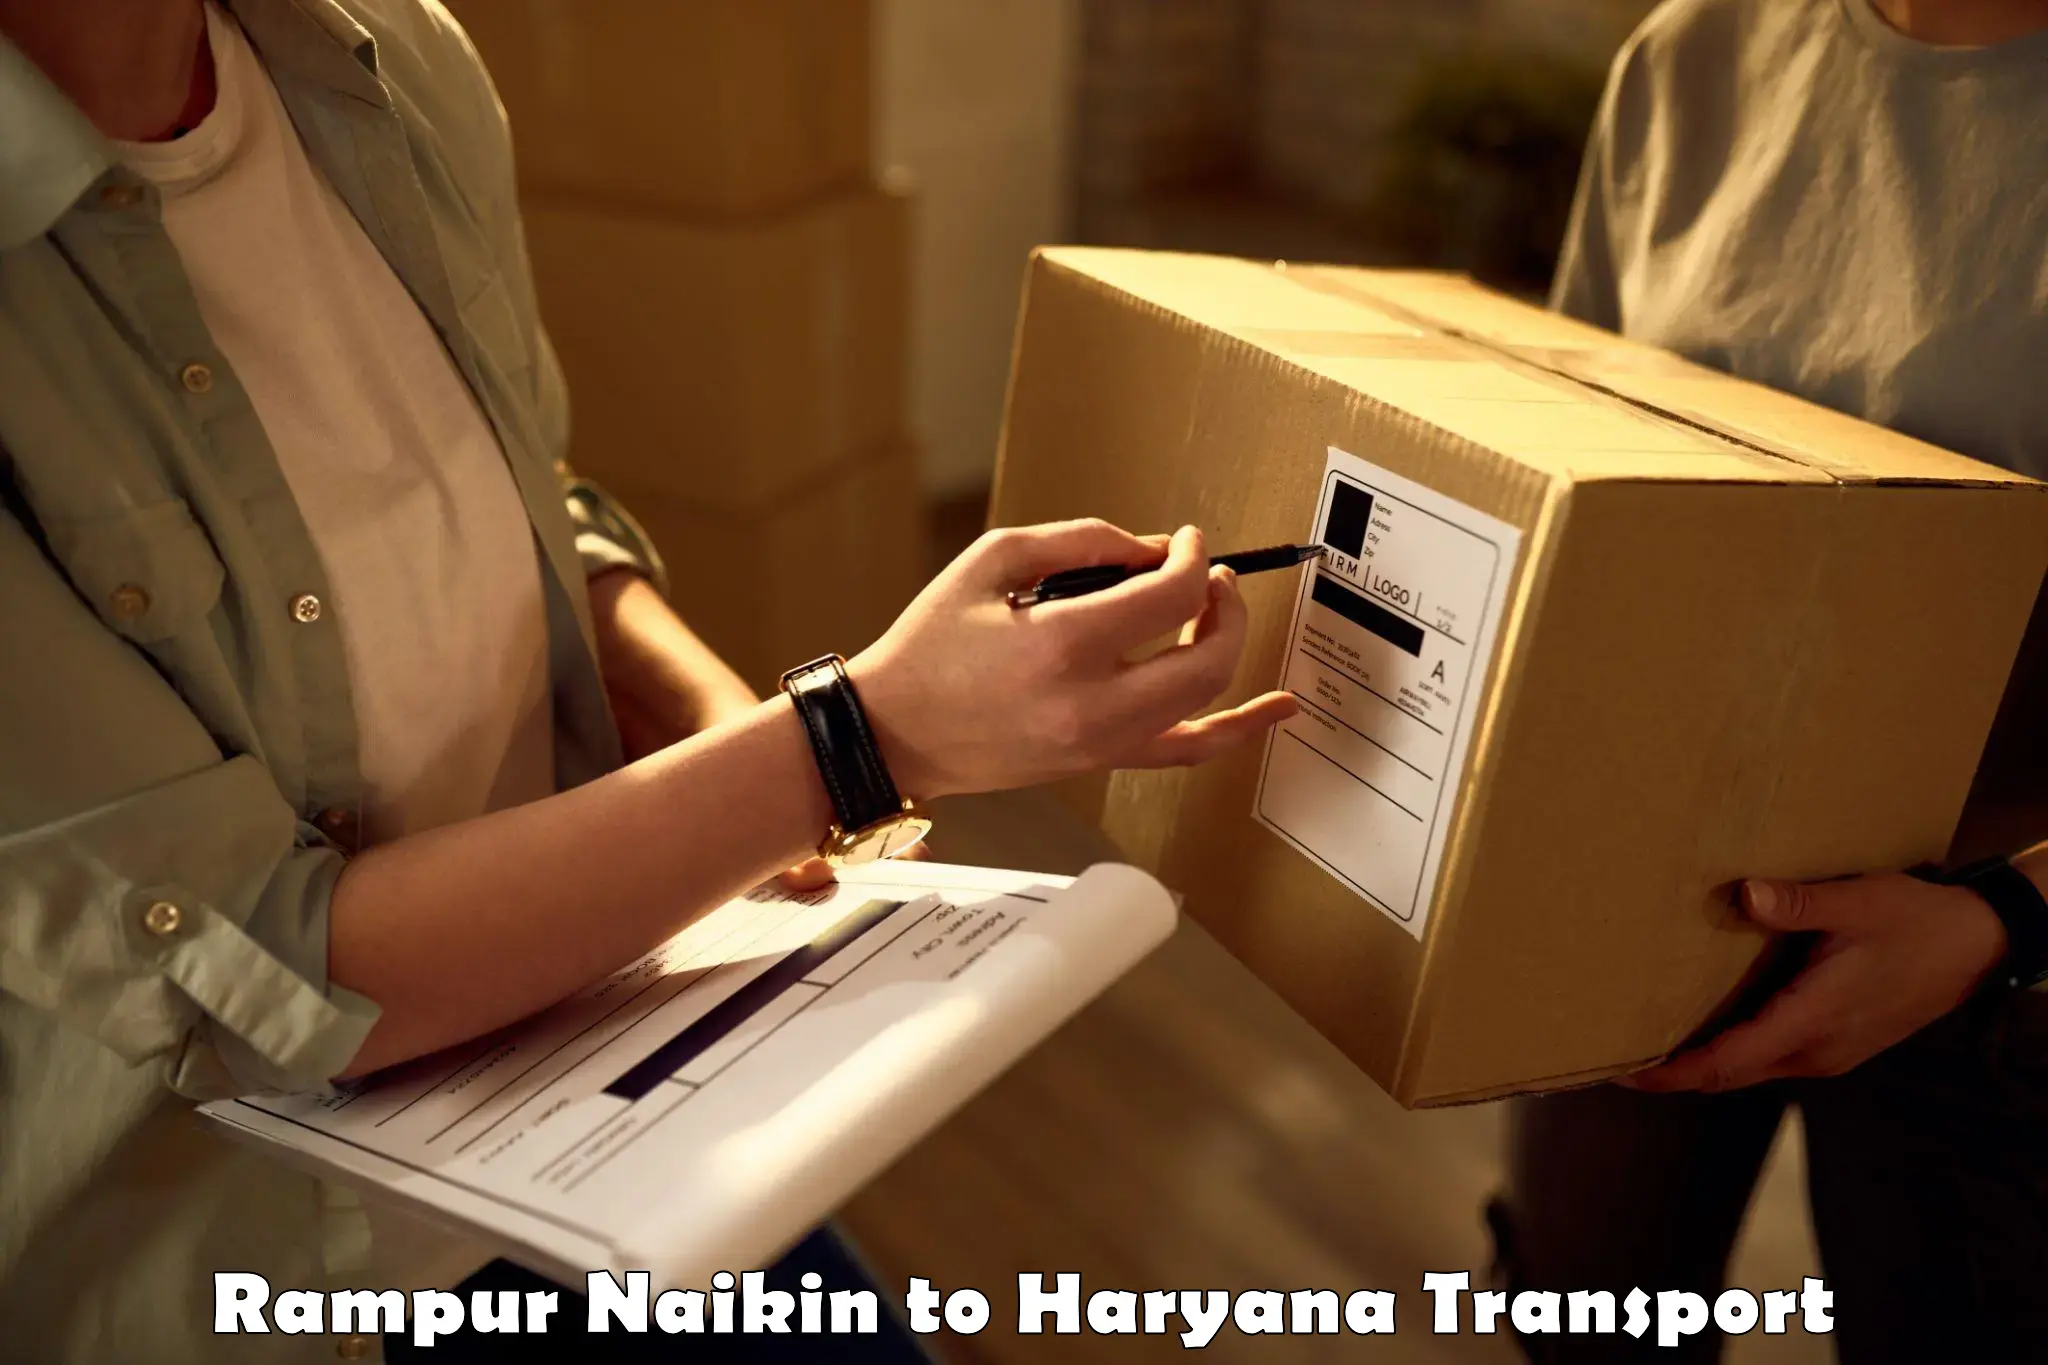 Bike shipping service Rampur Naikin to Narwana